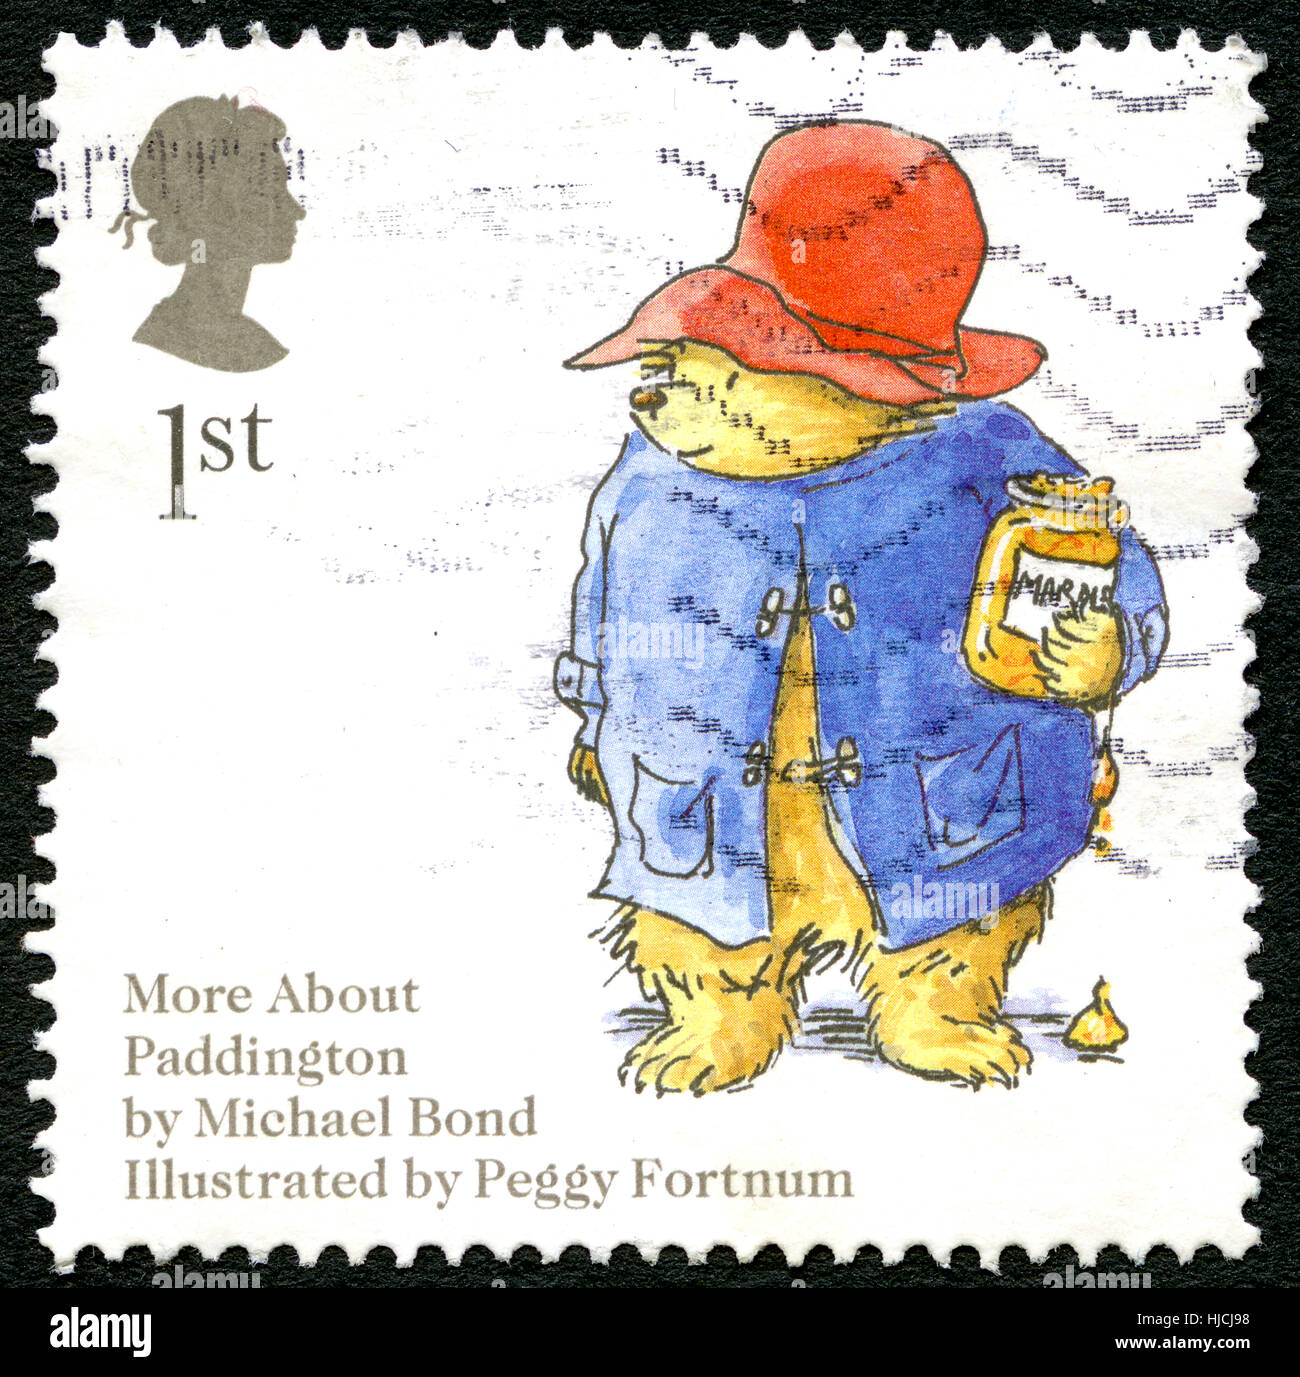 Regno Unito - circa 2006: un usato francobollo DAL REGNO UNITO, raffigurante una illustrazione di Paddington Bear tenendo un vasetto di marmellata di arance, circa 2006. Foto Stock